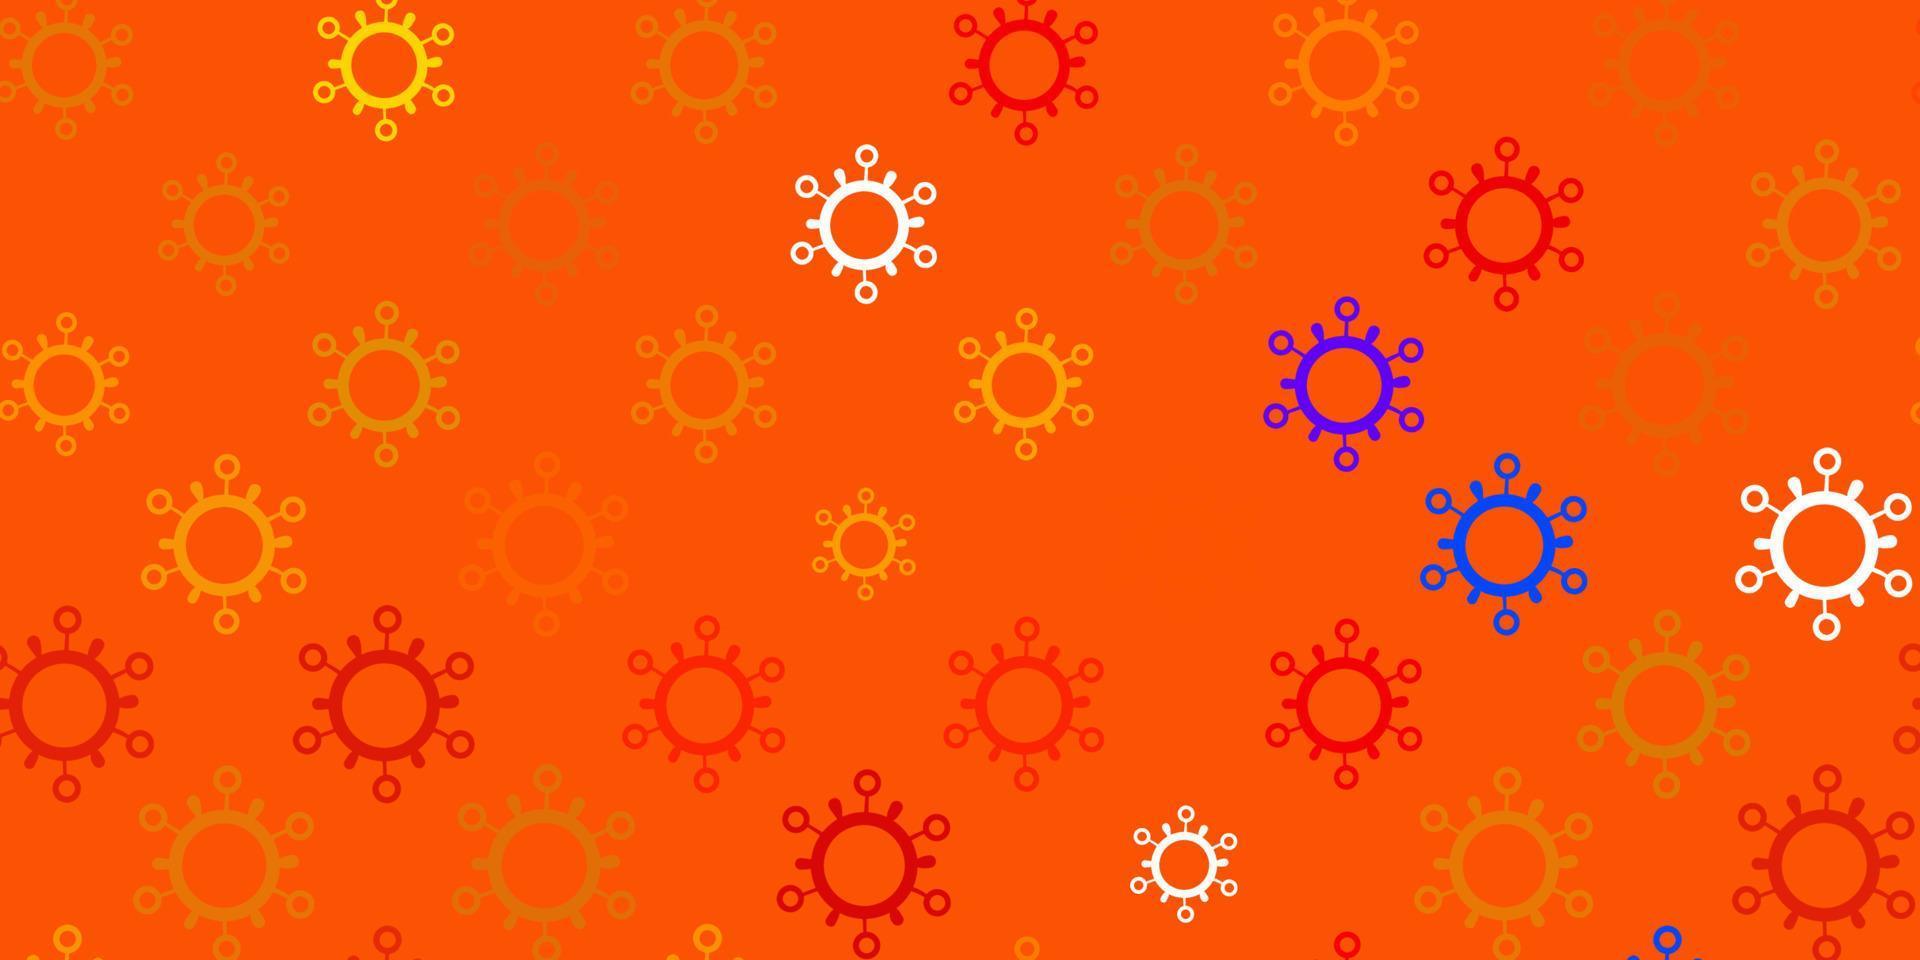 mörk orange vektor bakgrund med virussymboler.